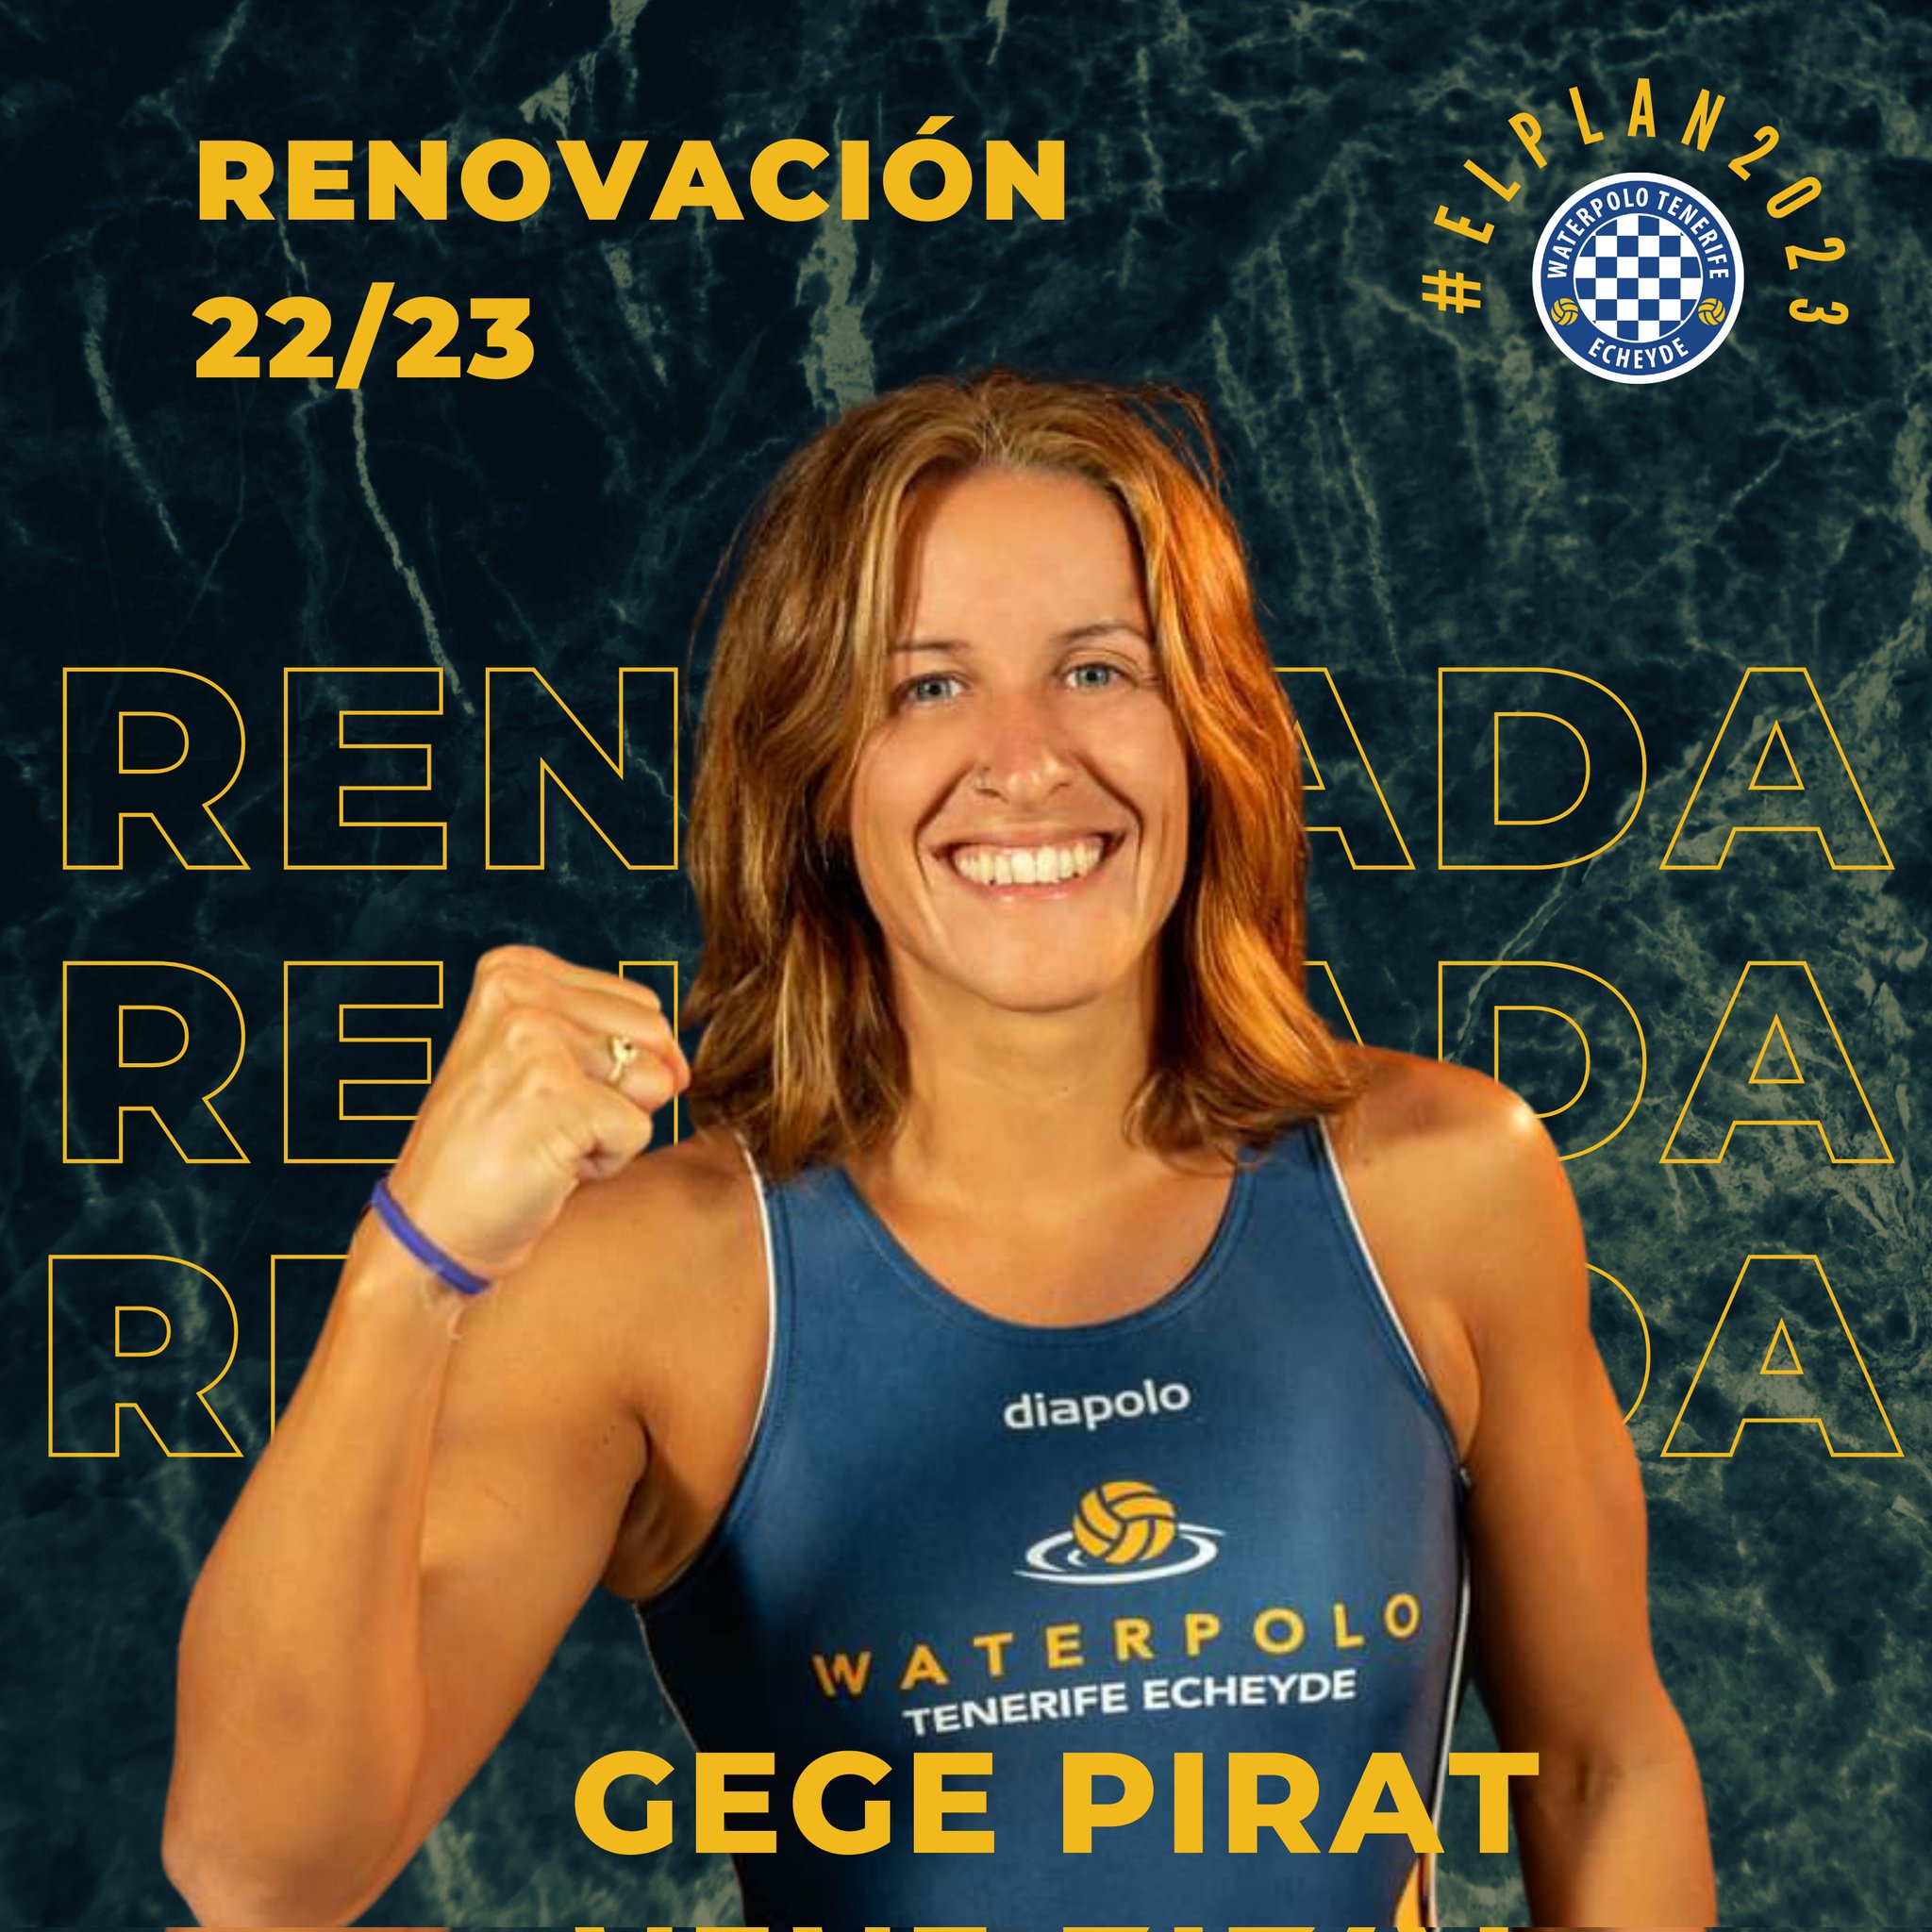 Gege Pirat, una de las jugadoras clave de las Guayotas, renueva por un año más